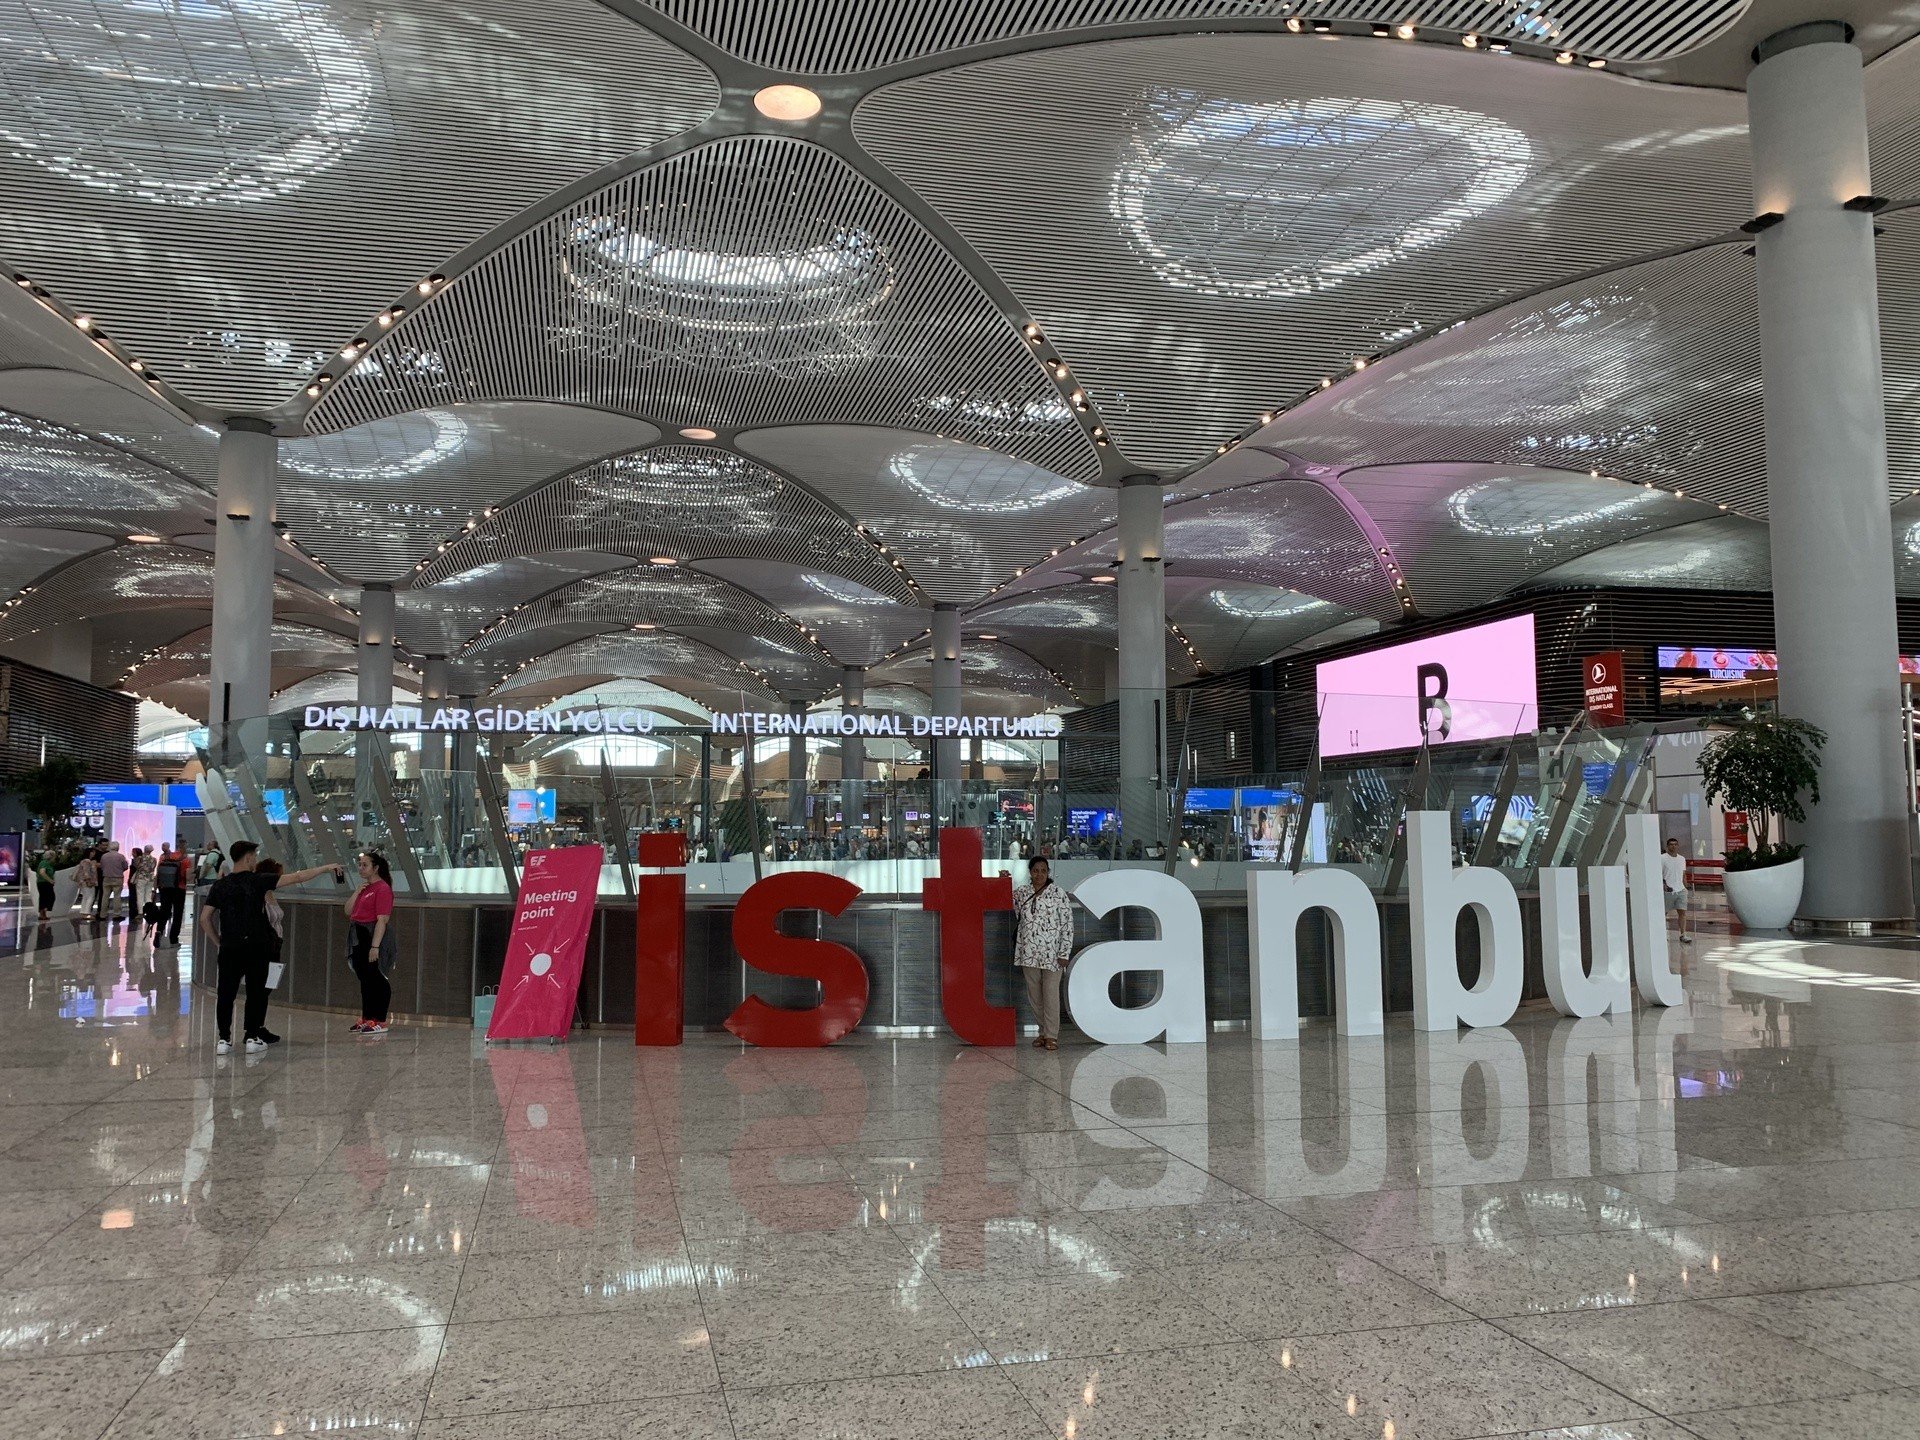 Nowe lotnisko Stambuł IST kusi luksusem i ma ambicję stać się największym  portem lotniczym świata. To imponująca baza Turkish Airlines | Polska Times